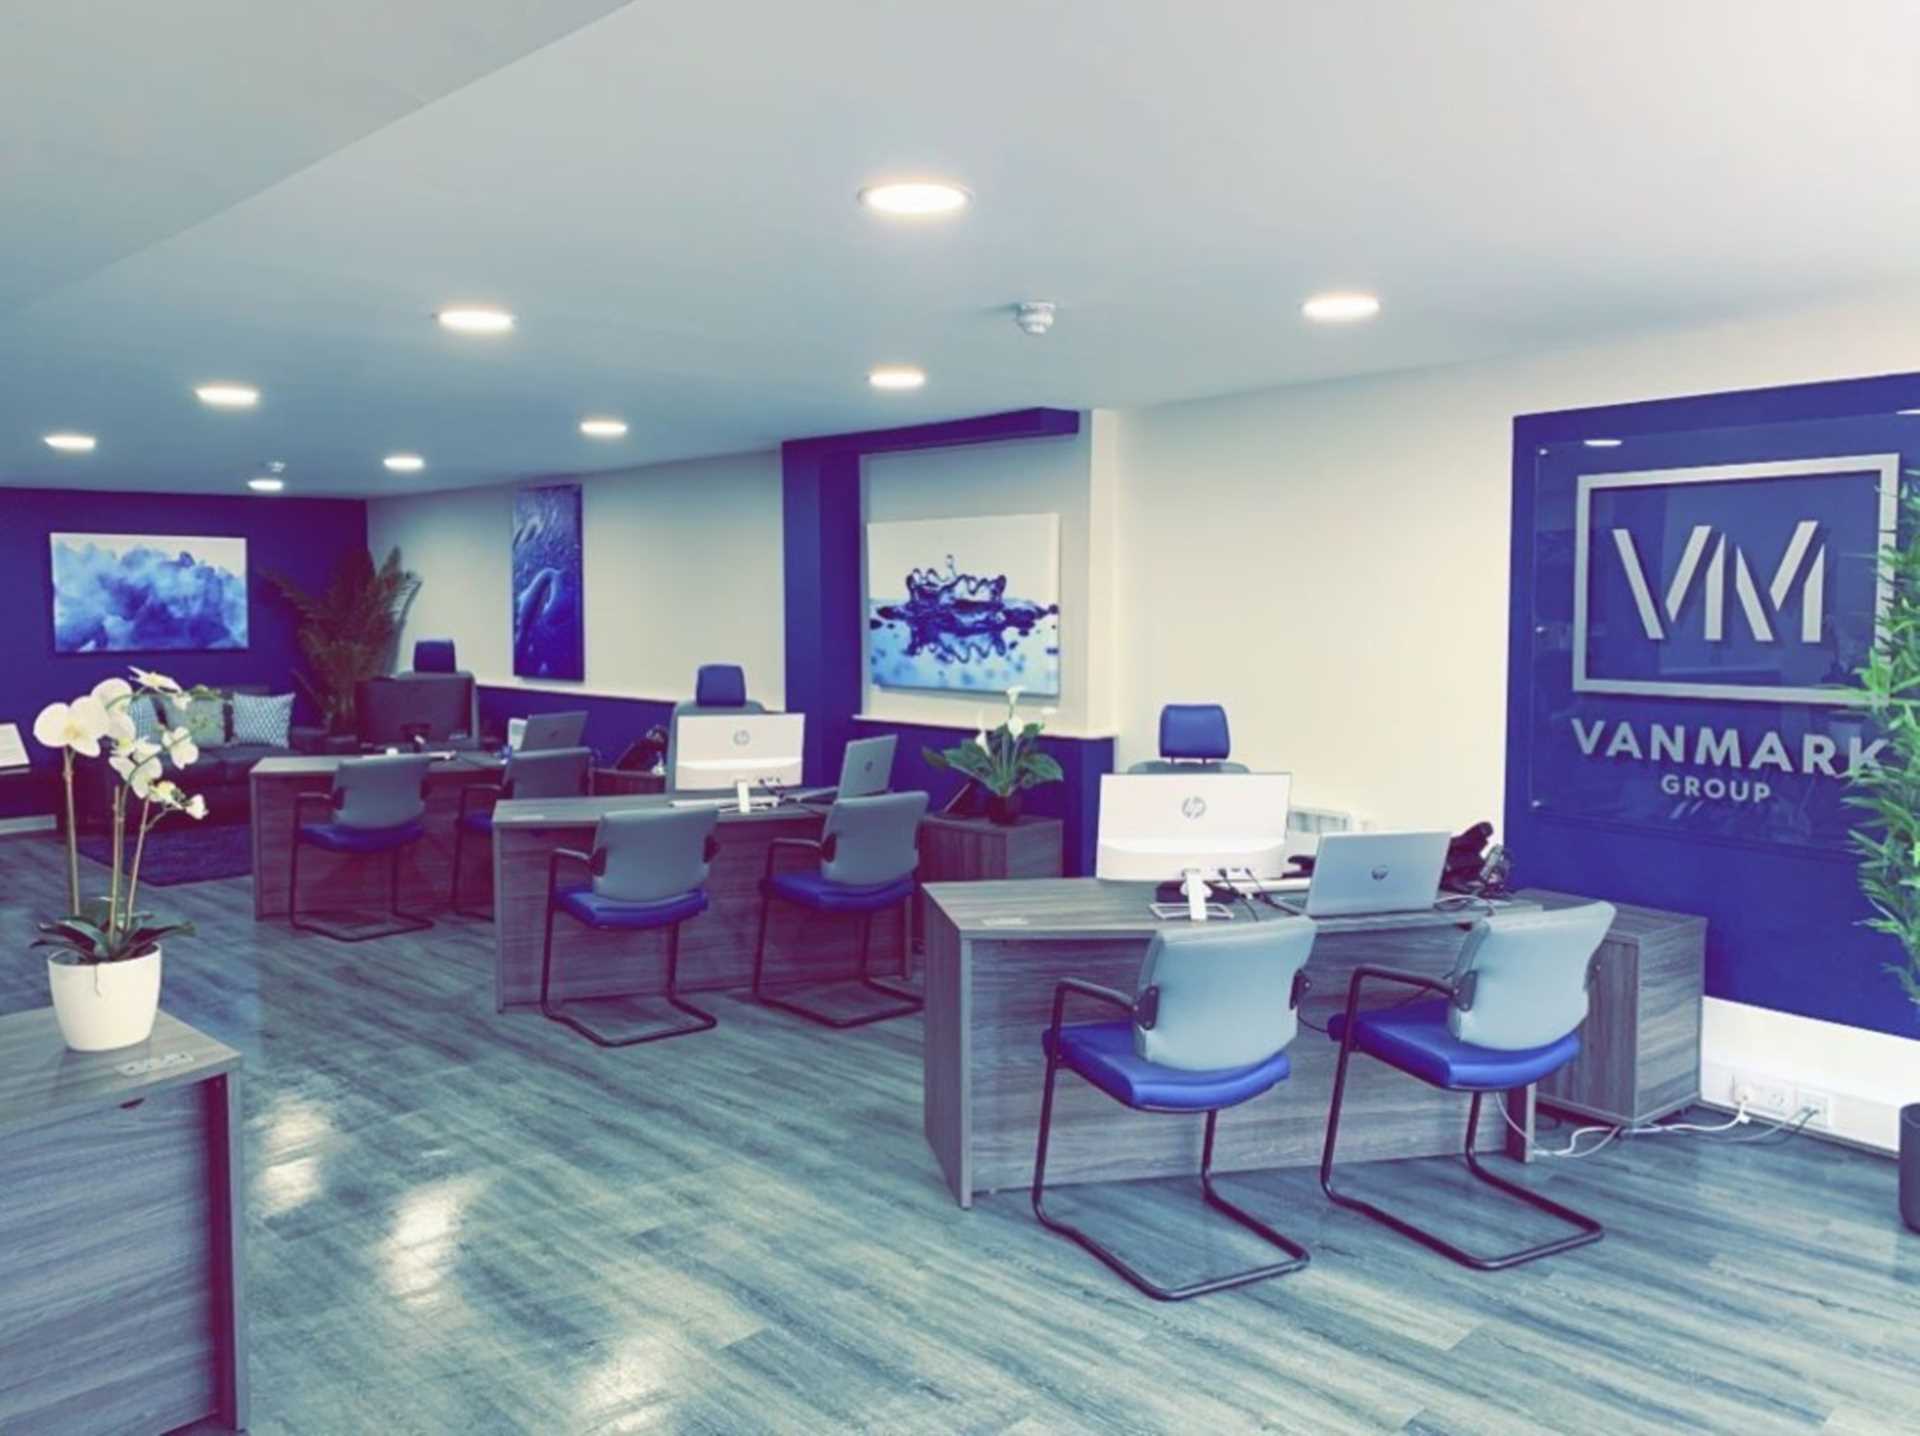 Rebranded to Vanmark Group Ltd